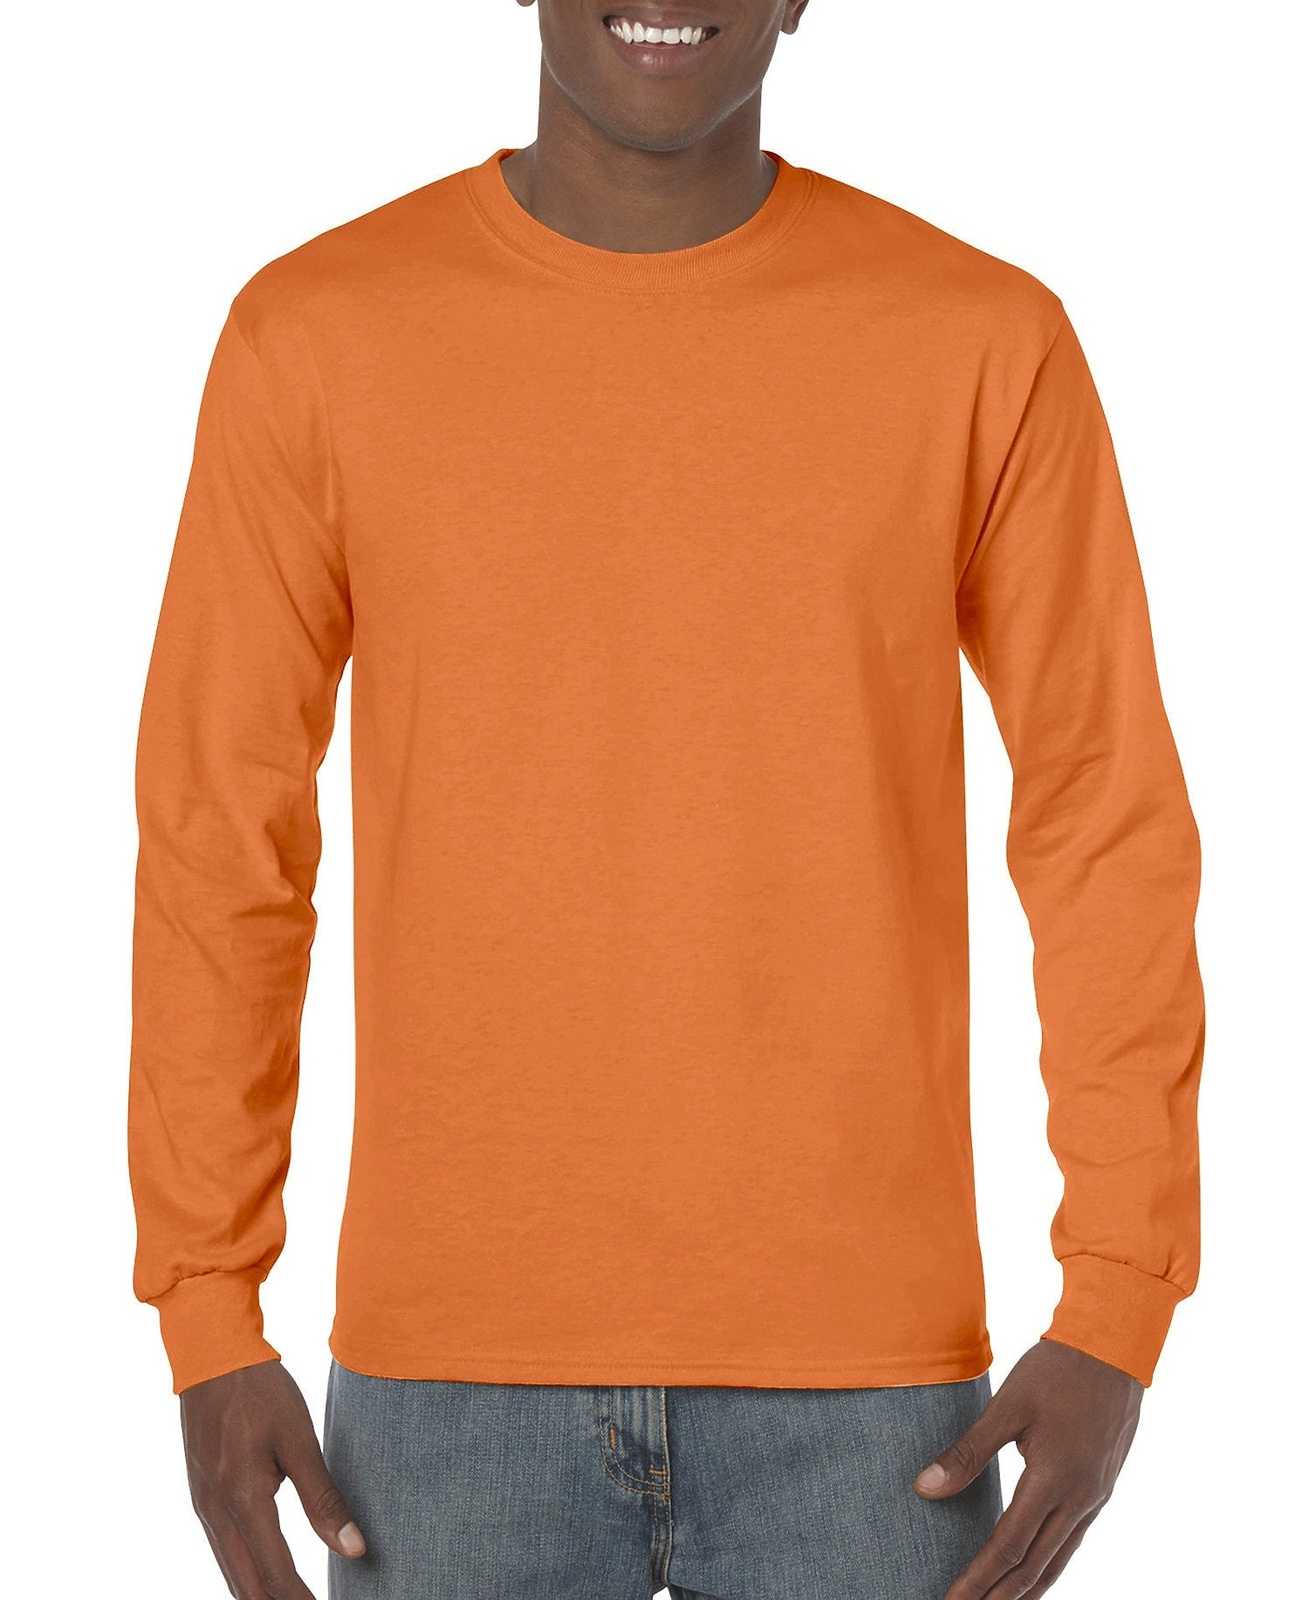 Gildan 5400 Heavy Cotton 100% Cotton Long Sleeve T-Shirt - S Orange - HIT a Double